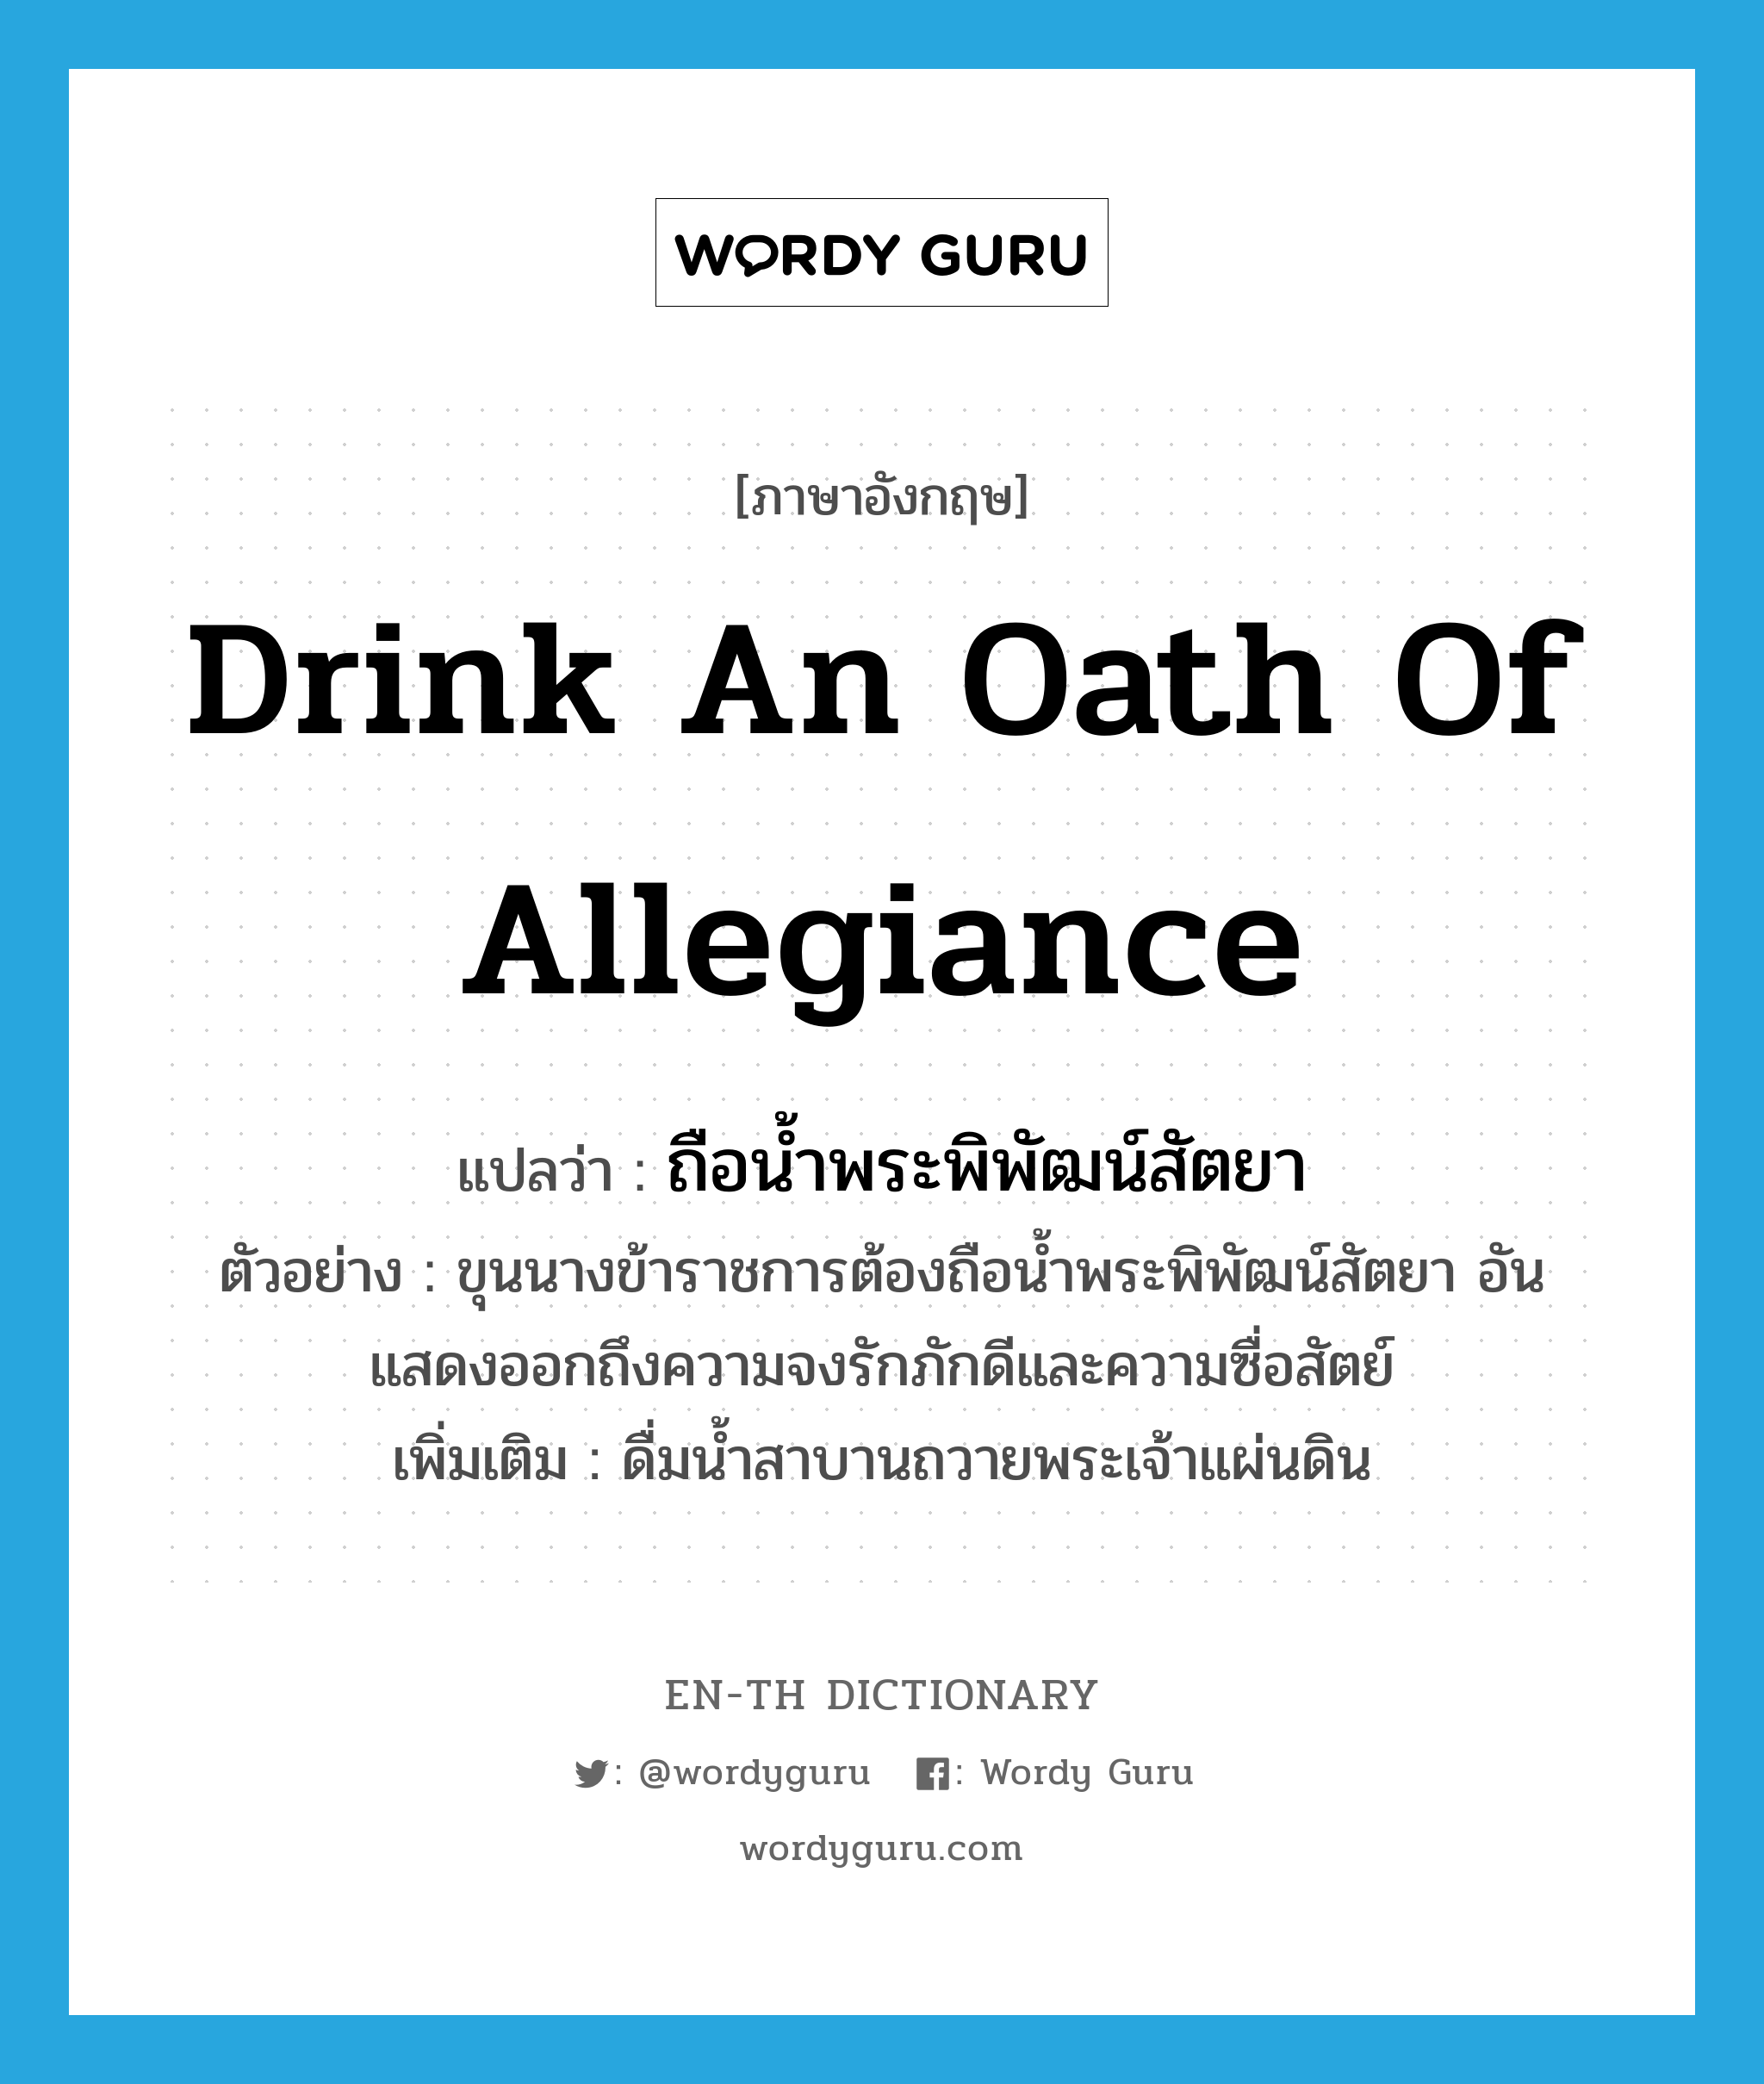 drink an oath of allegiance แปลว่า?, คำศัพท์ภาษาอังกฤษ drink an oath of allegiance แปลว่า ถือน้ำพระพิพัฒน์สัตยา ประเภท V ตัวอย่าง ขุนนางข้าราชการต้องถือน้ำพระพิพัฒน์สัตยา อันแสดงออกถึงความจงรักภักดีและความซื่อสัตย์ เพิ่มเติม ดื่มน้ำสาบานถวายพระเจ้าแผ่นดิน หมวด V